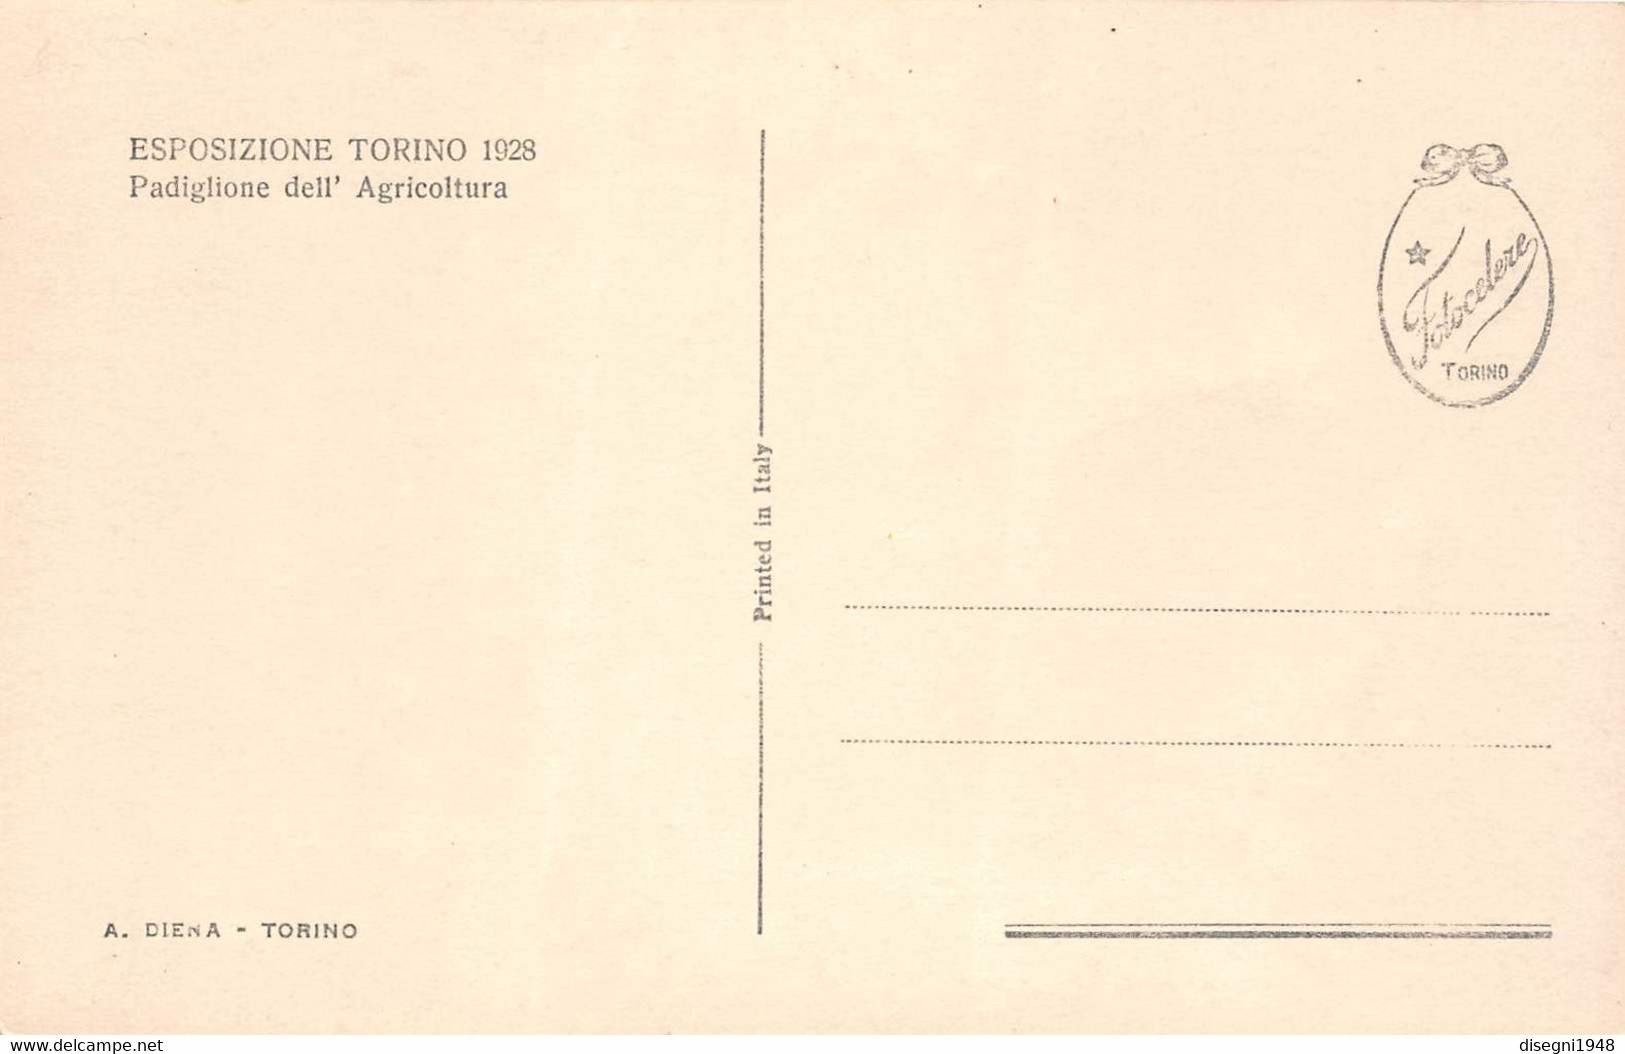 09886 "ESPOSIZIONE TORINO 1928 - PADIGLIONE DELL'AGRICOLTURA" ARCHITETT. DEL '900. ANIMATA.CART. ORIG. NON SPED. - Mostre, Esposizioni